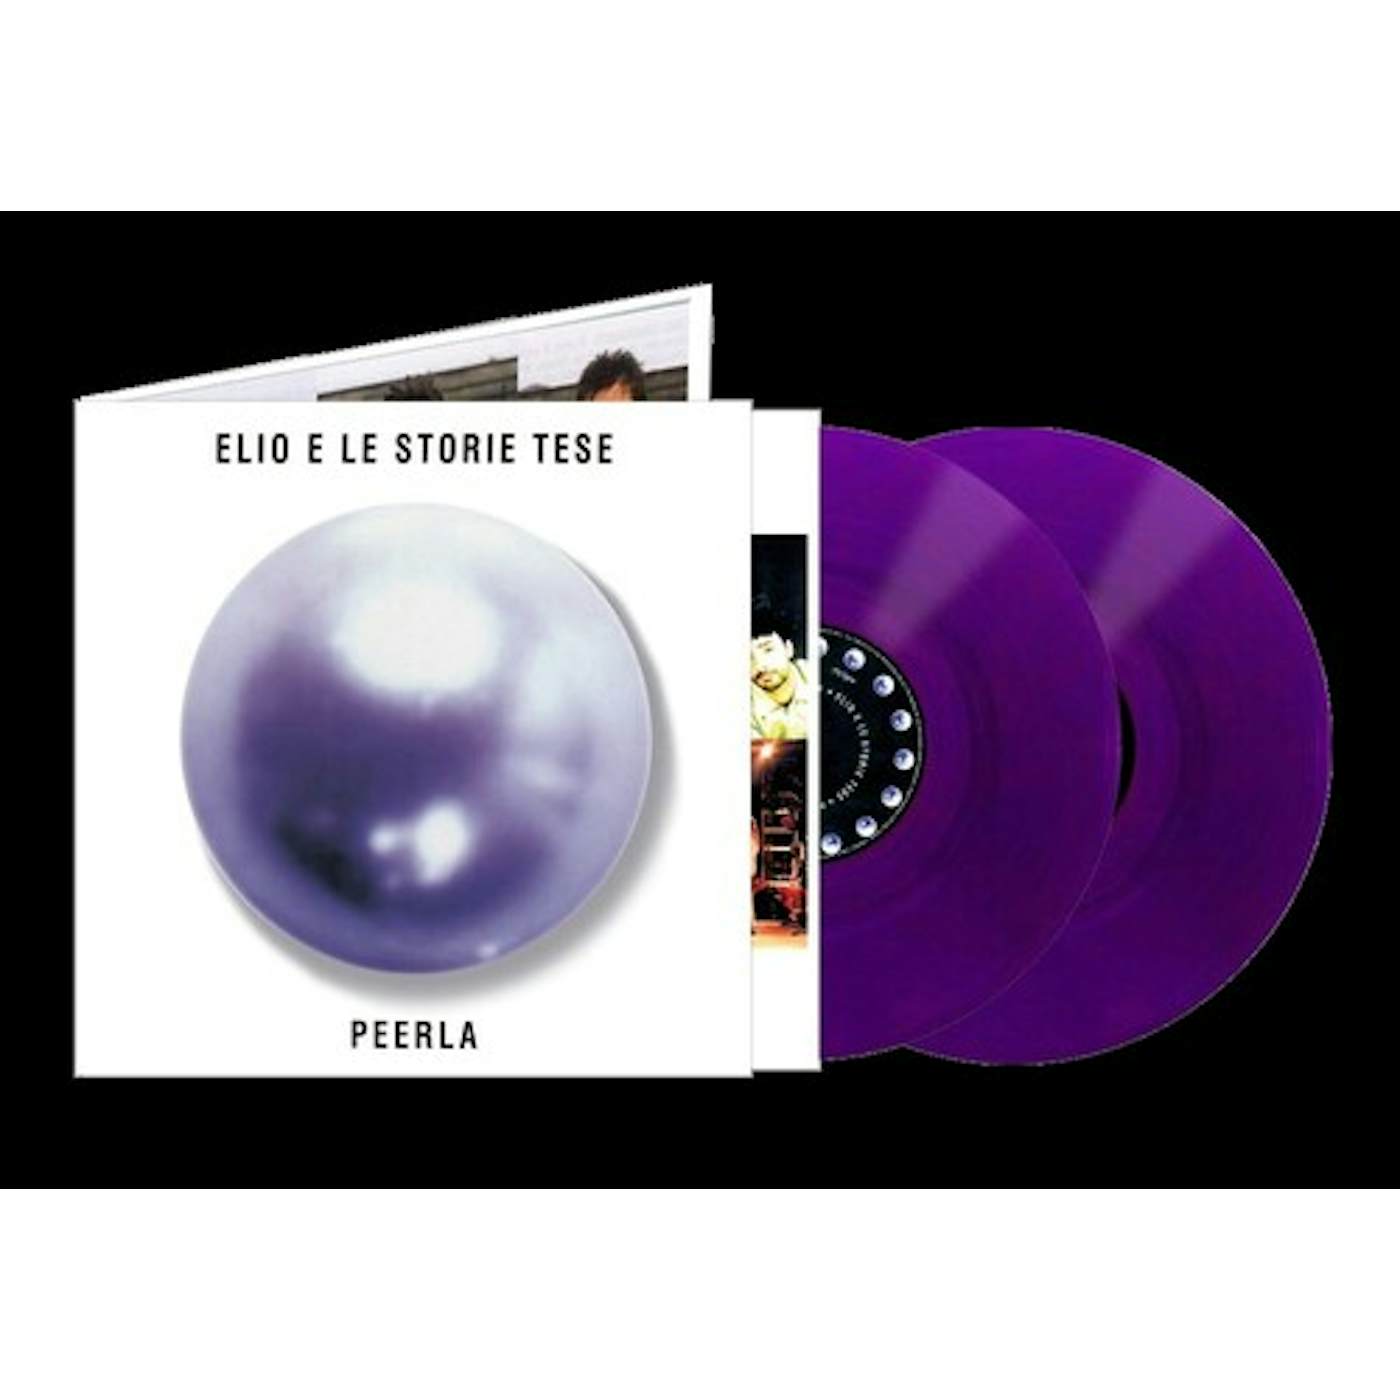 Elio e le Storie Tese PEERLA Vinyl Record